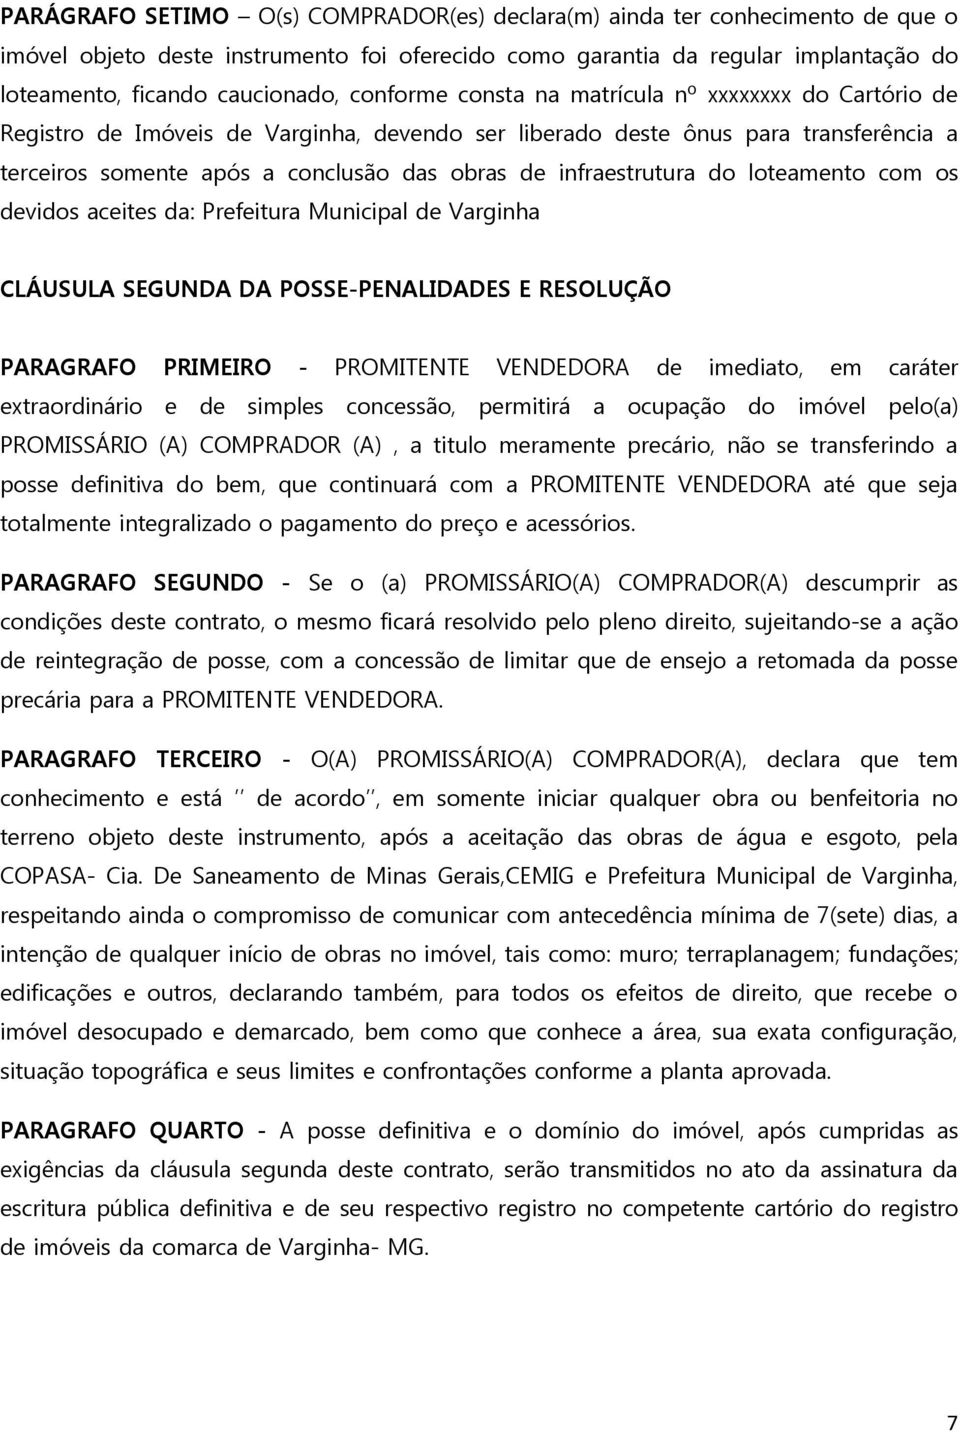 infraestrutura do loteamento com os devidos aceites da: Prefeitura Municipal de Varginha CLÁUSULA SEGUNDA DA POSSE-PENALIDADES E RESOLUÇÃO PARAGRAFO PRIMEIRO - PROMITENTE VENDEDORA de imediato, em